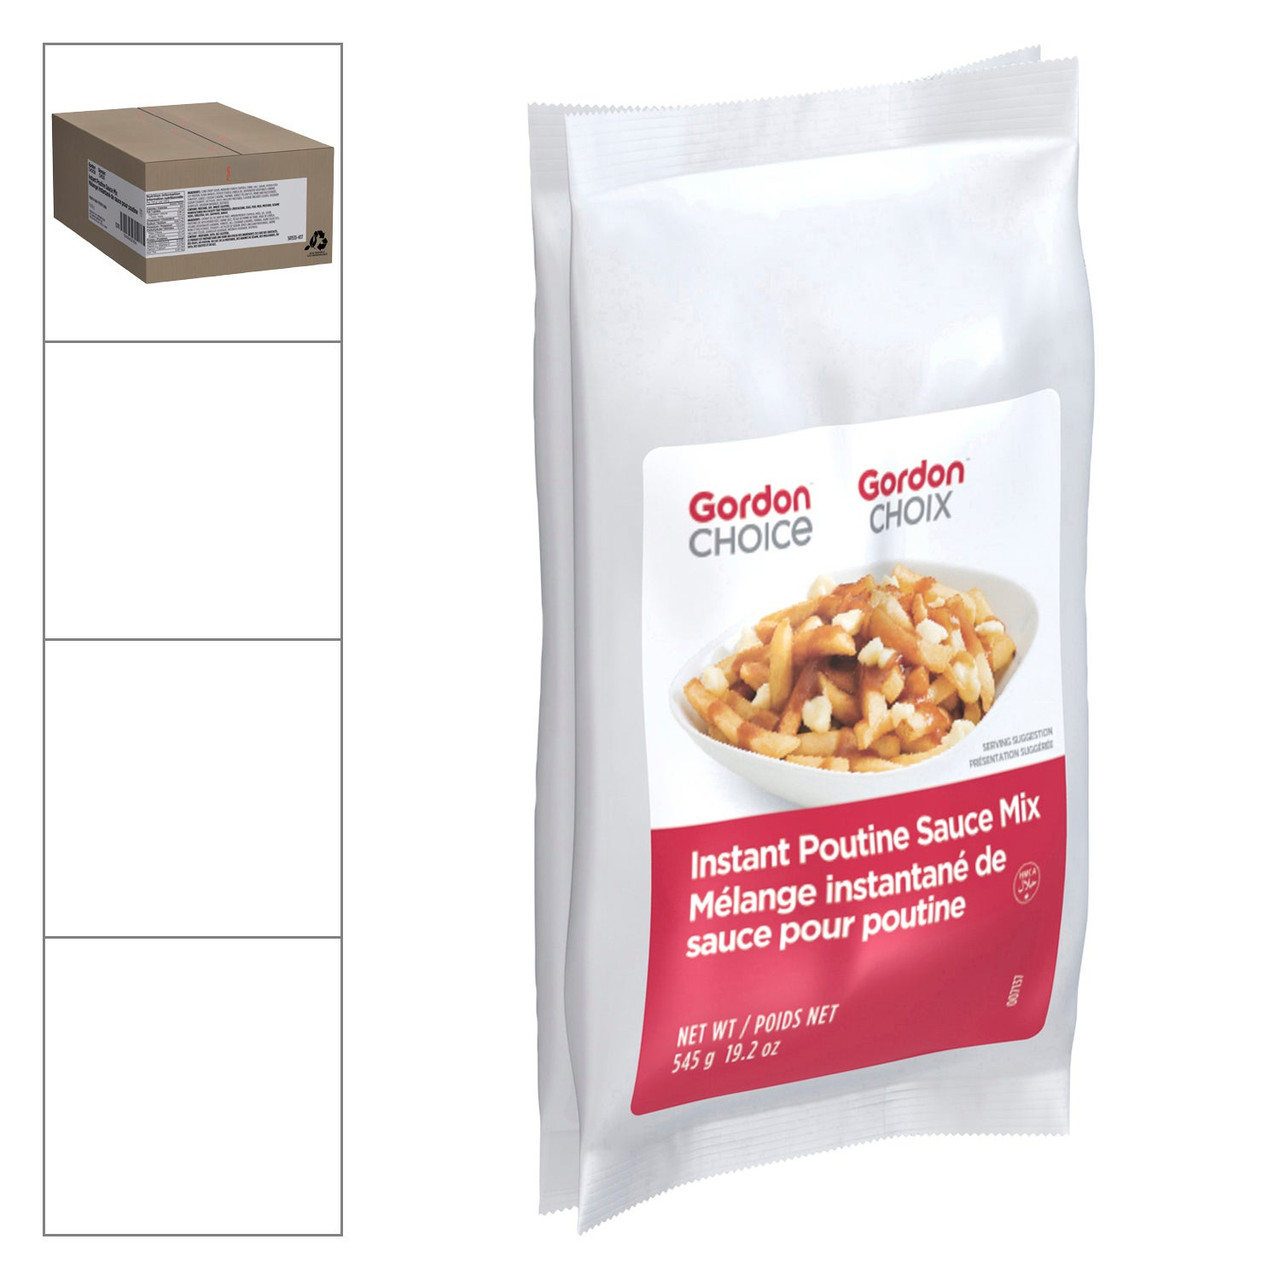 Gordon Choice Instant Poutine Sauce Mix, No Added Msg Vegan | 545G/Unit, 8 Units/Case